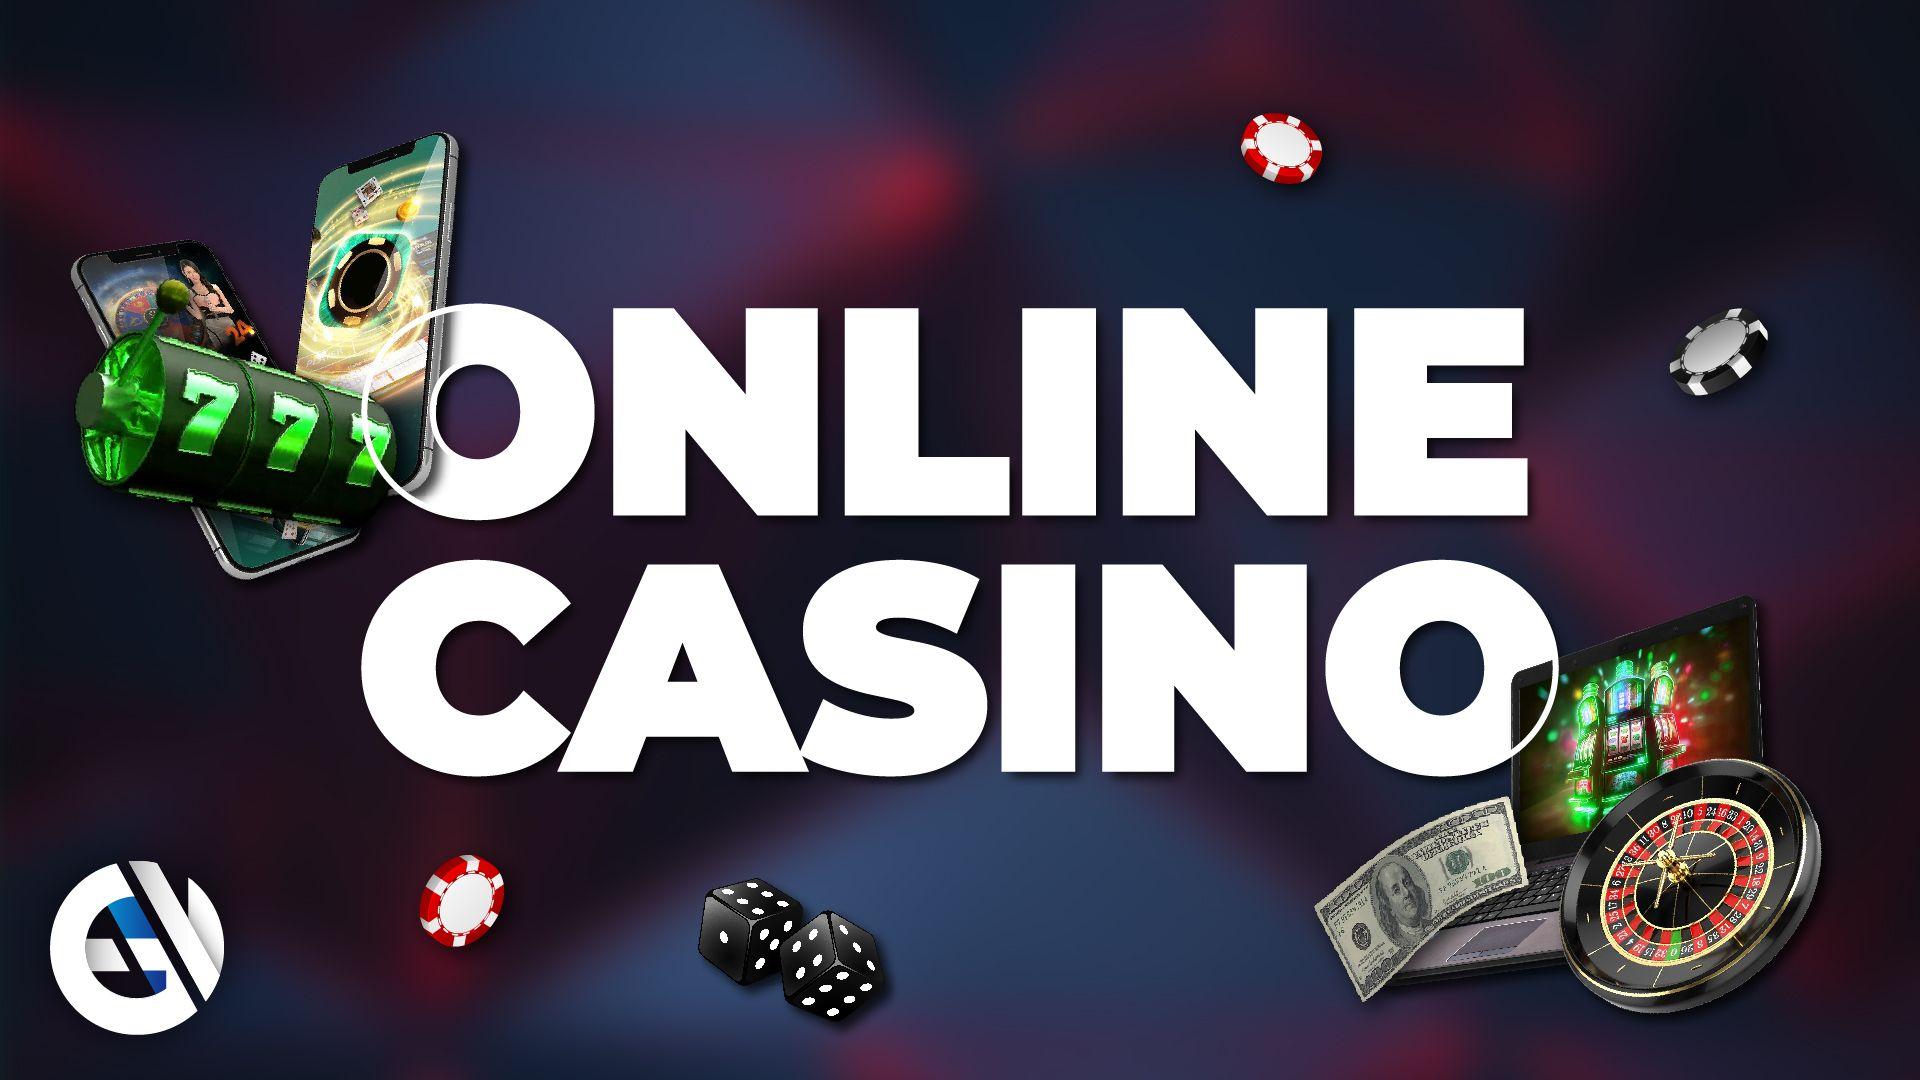 Os casinos online assistem a um aumento dos jogos de "Crash